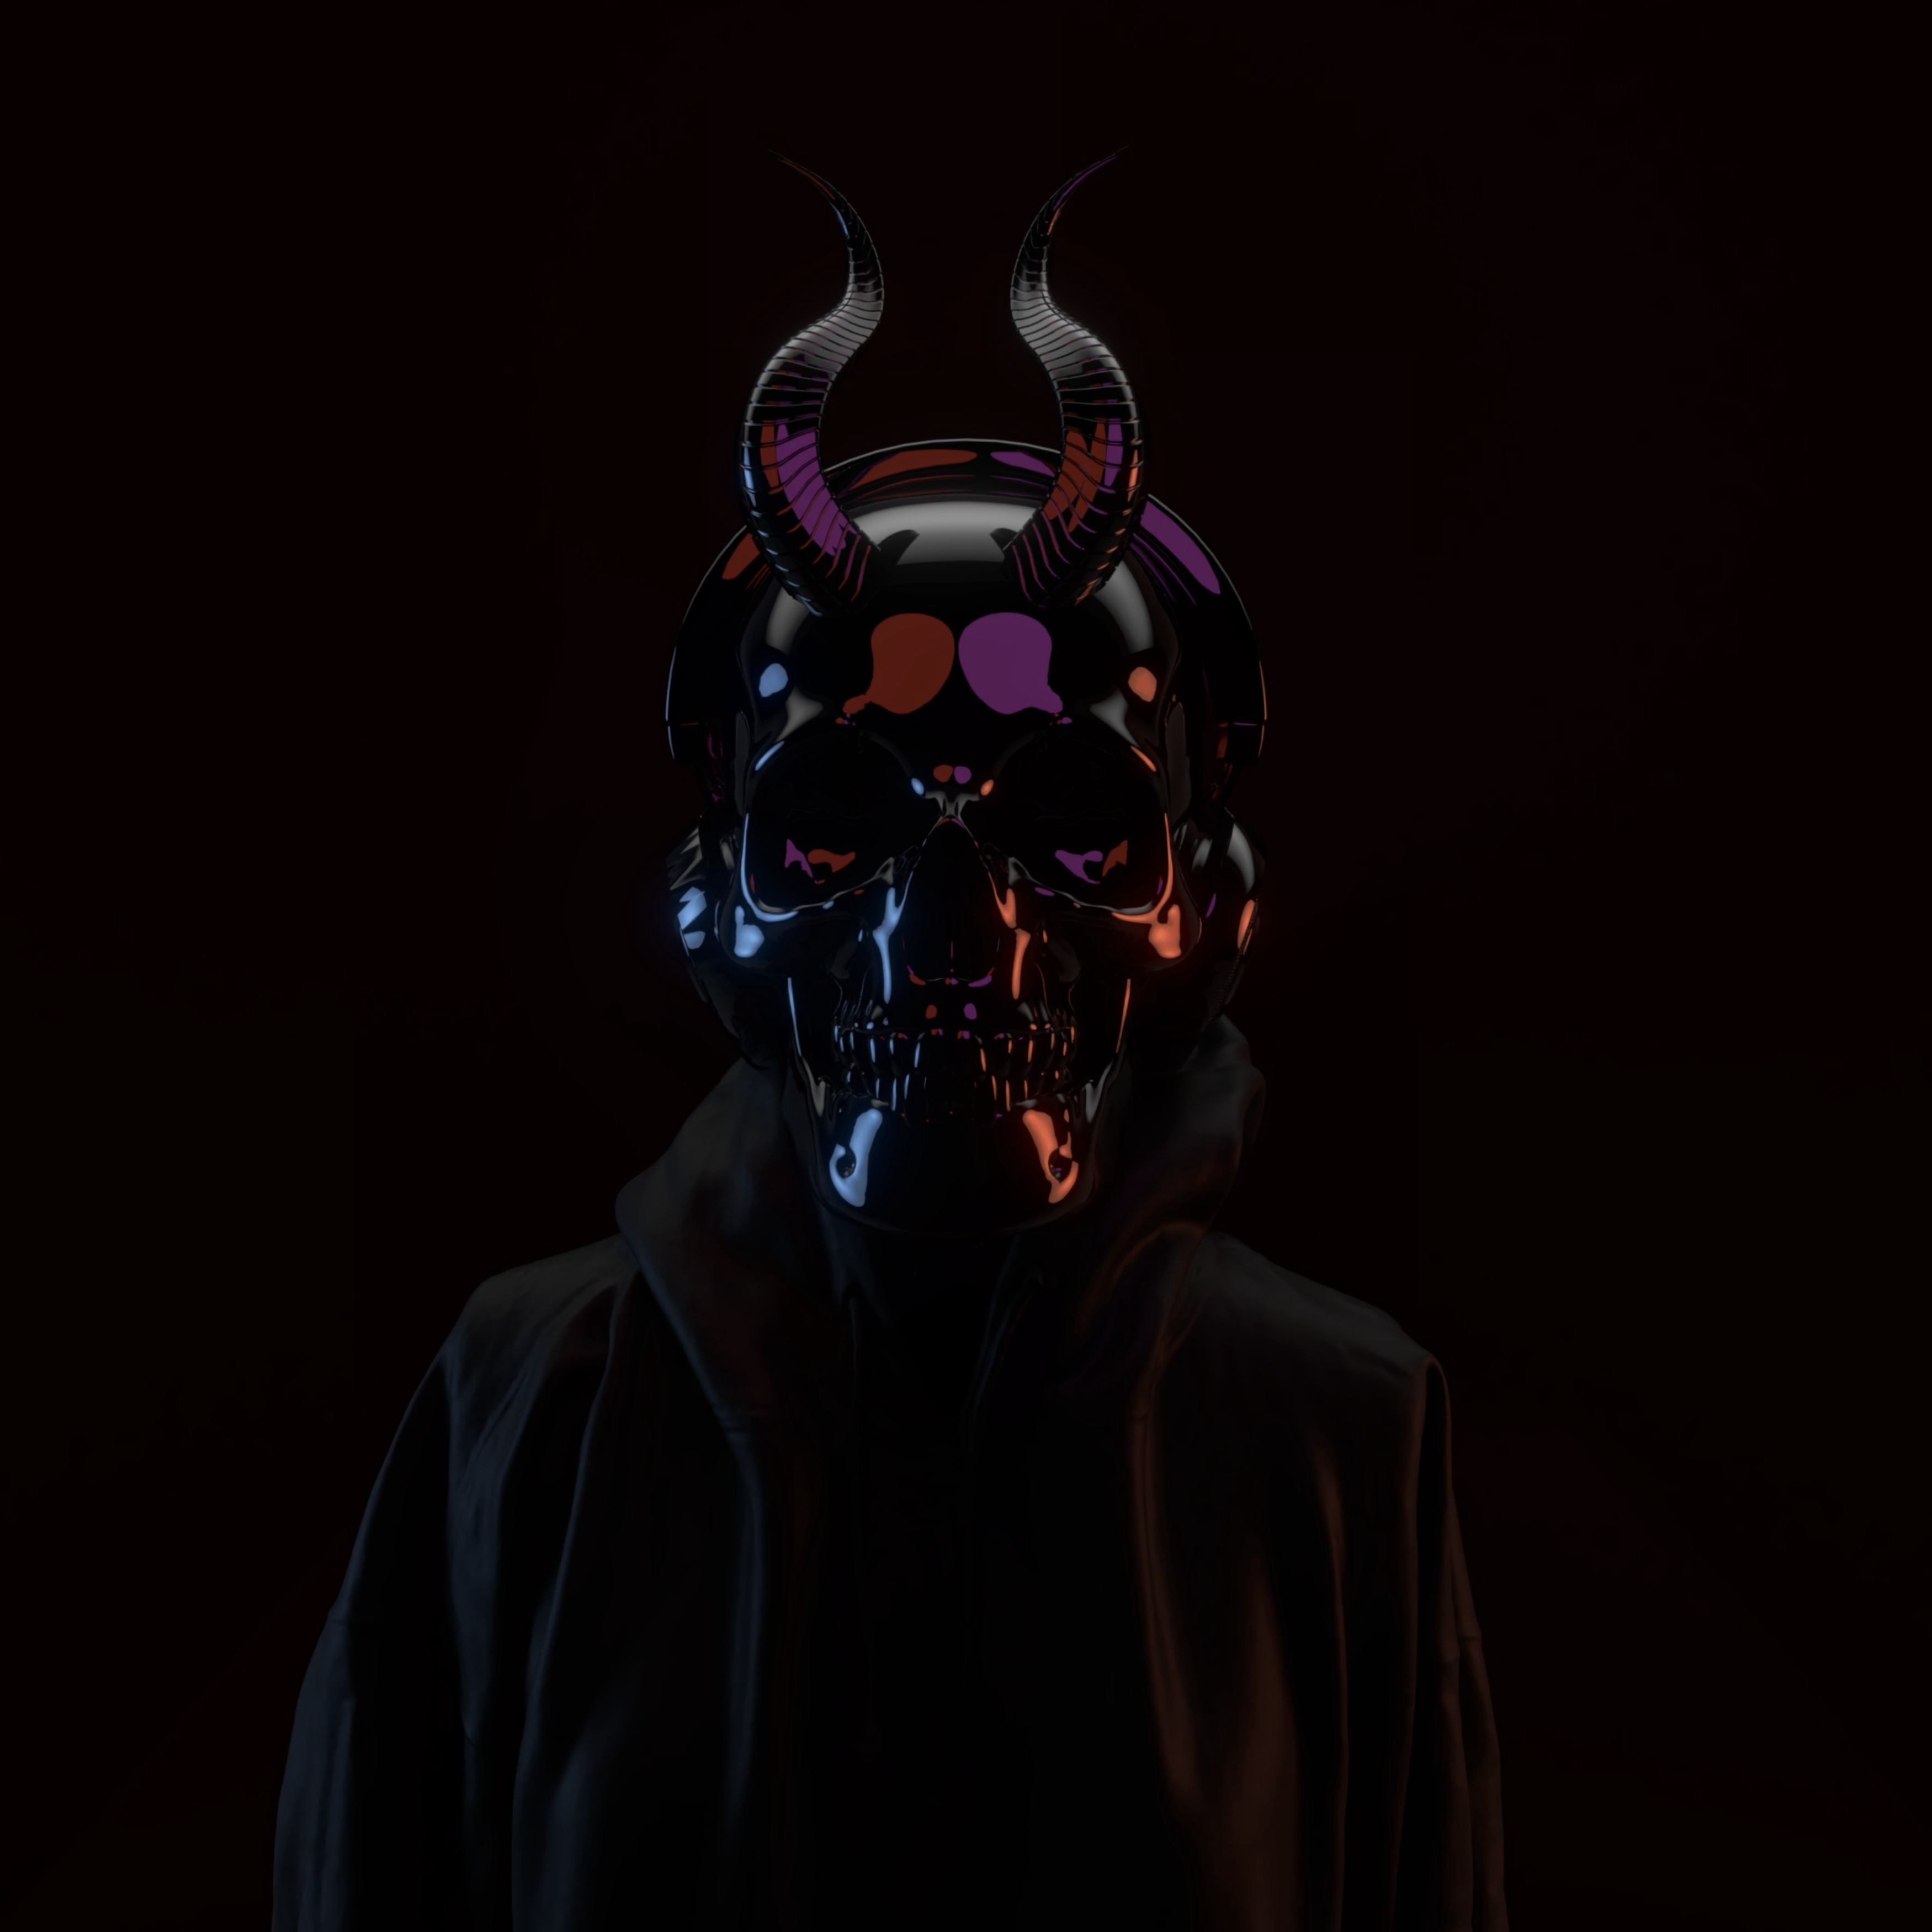 skull, black, dark, mask, horns Image for desktop